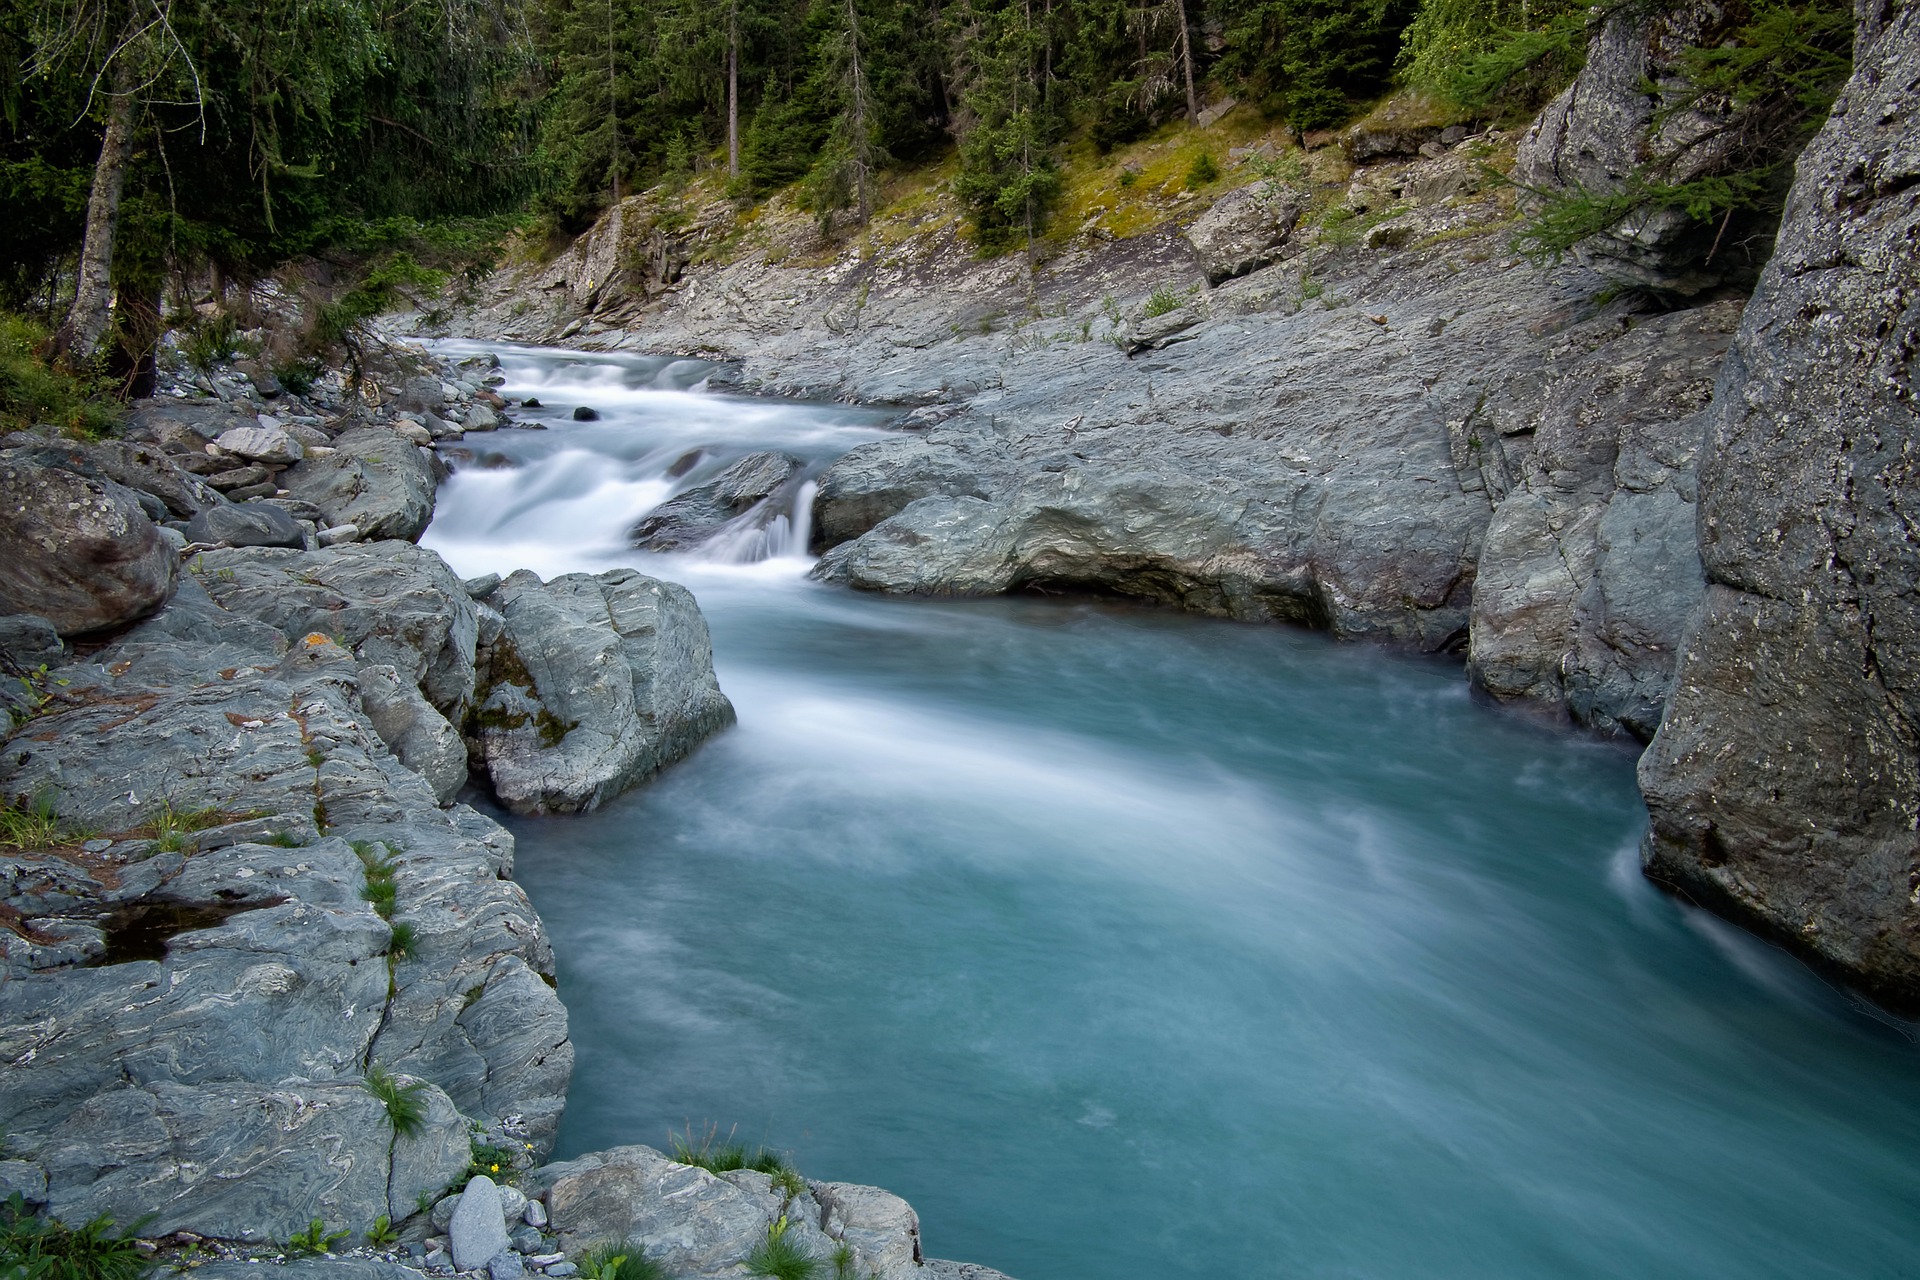 Le débit saisonnier des rivières est chamboulé entre l'hiver et le printemps, à l'inverse du cycle naturel. © Camera-man, Pixabay 